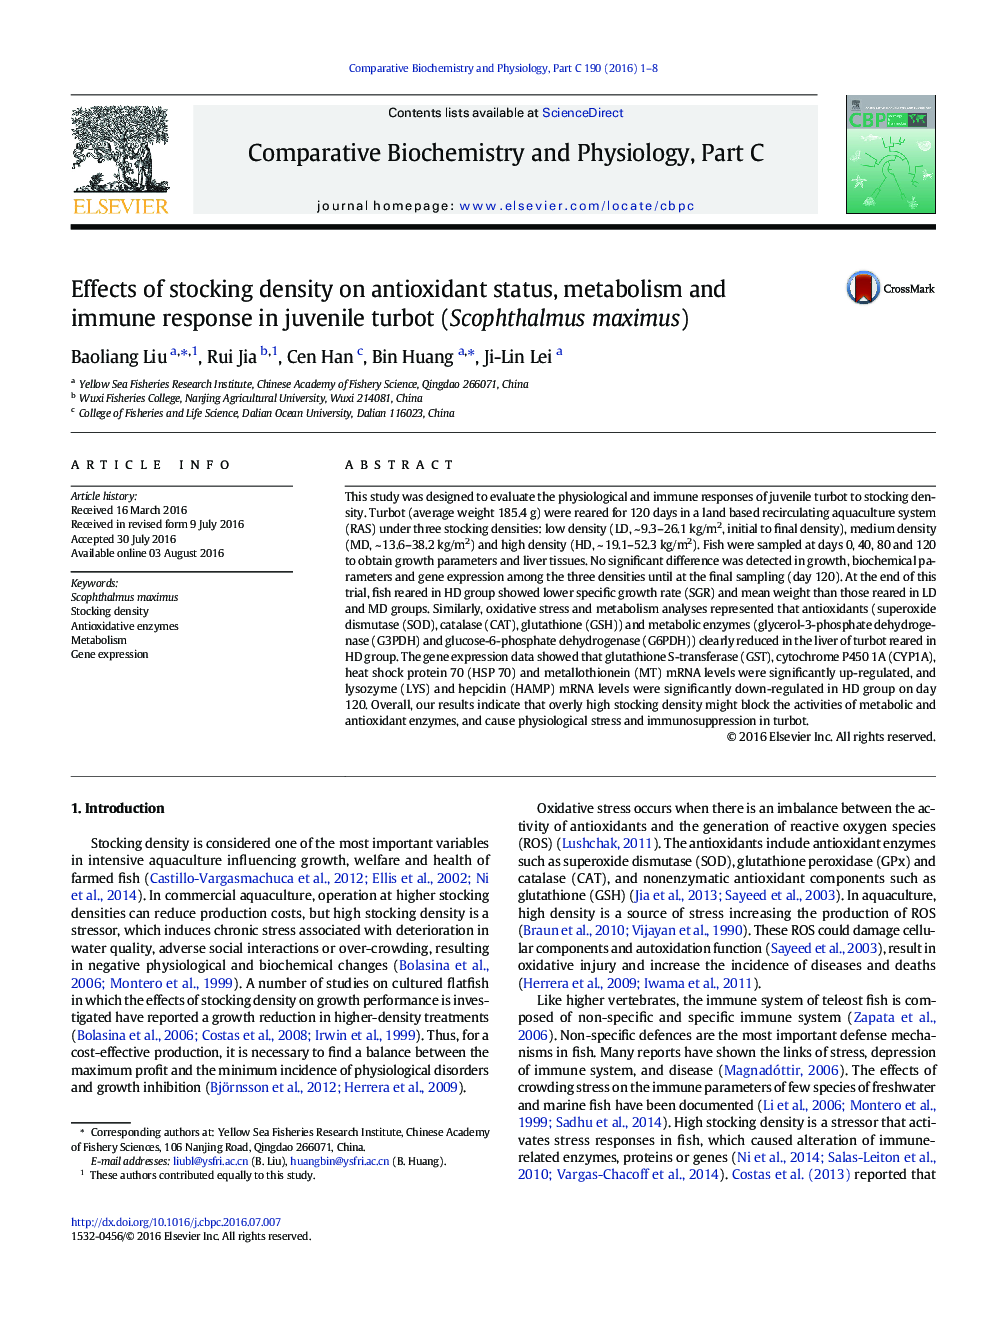 اثر تراکم ذخیره سازی بر وضعیت آنتی اکسیدانی، متابولیسم و پاسخ های ایمنی در سپر ماهی نوجوان (Scophthalmus ماکسیموس (Maximus))